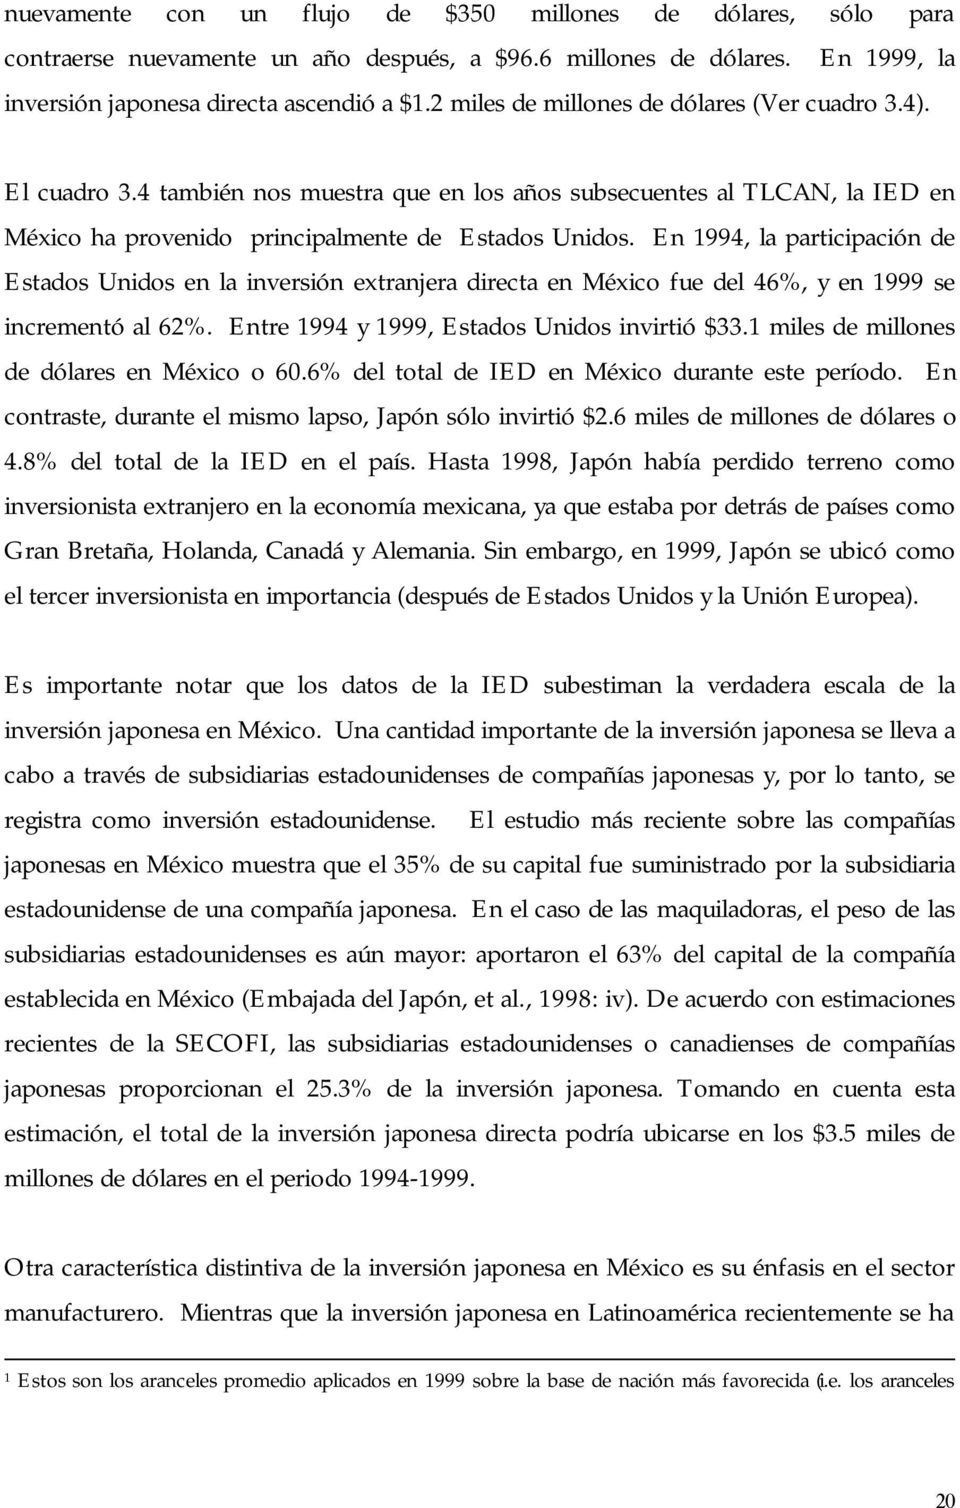 En 1994, la participación de Estados Unidos en la inversión extranjera directa en México fue del 46%, y en 1999 se incrementó al 62%. Entre 1994 y 1999, Estados Unidos invirtió $33.